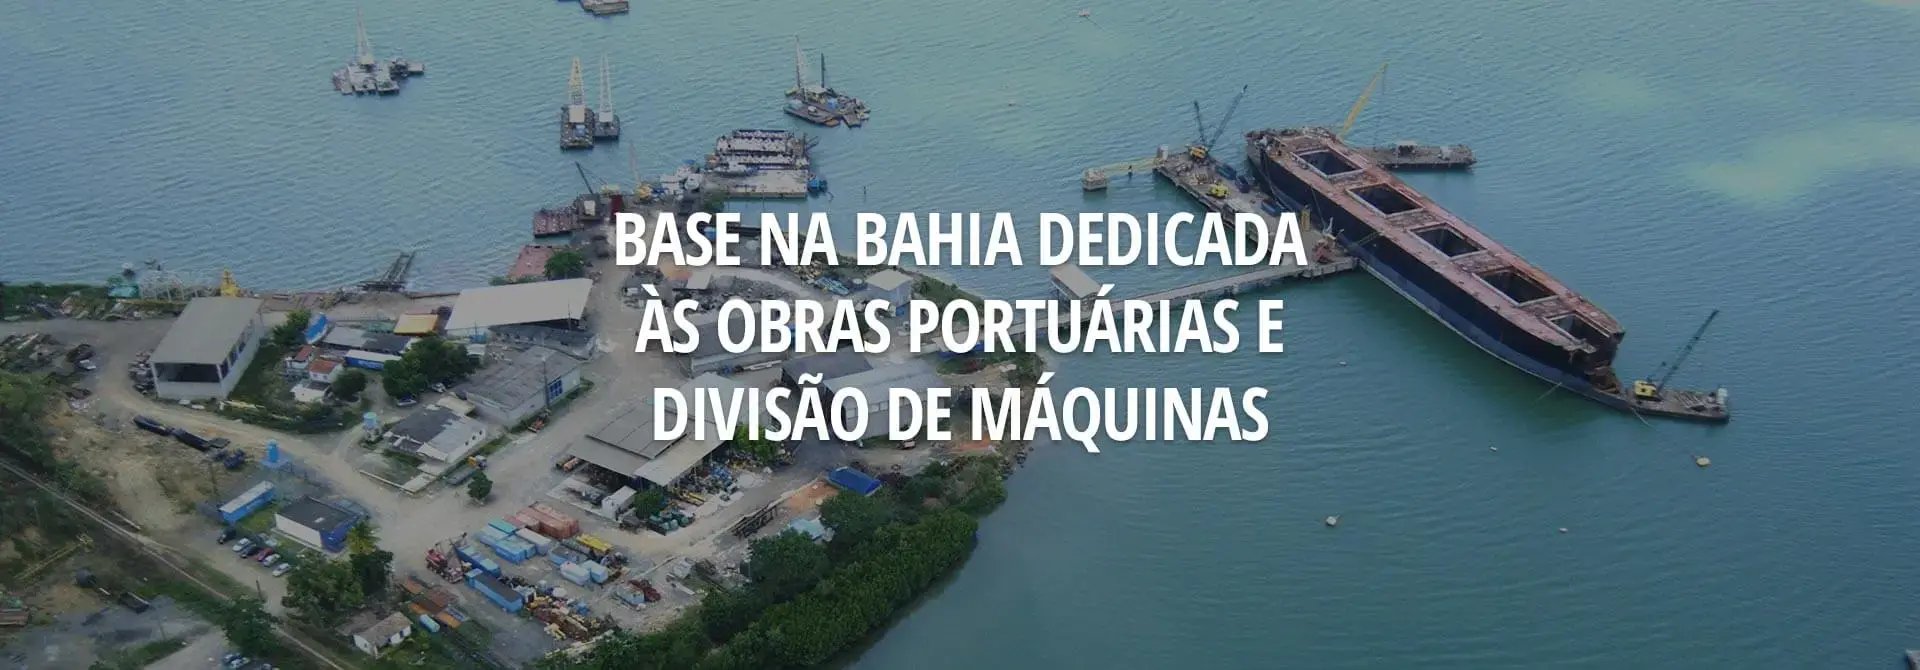 Base na Bahia dedicada às obras portuárias e divisão de máquinas